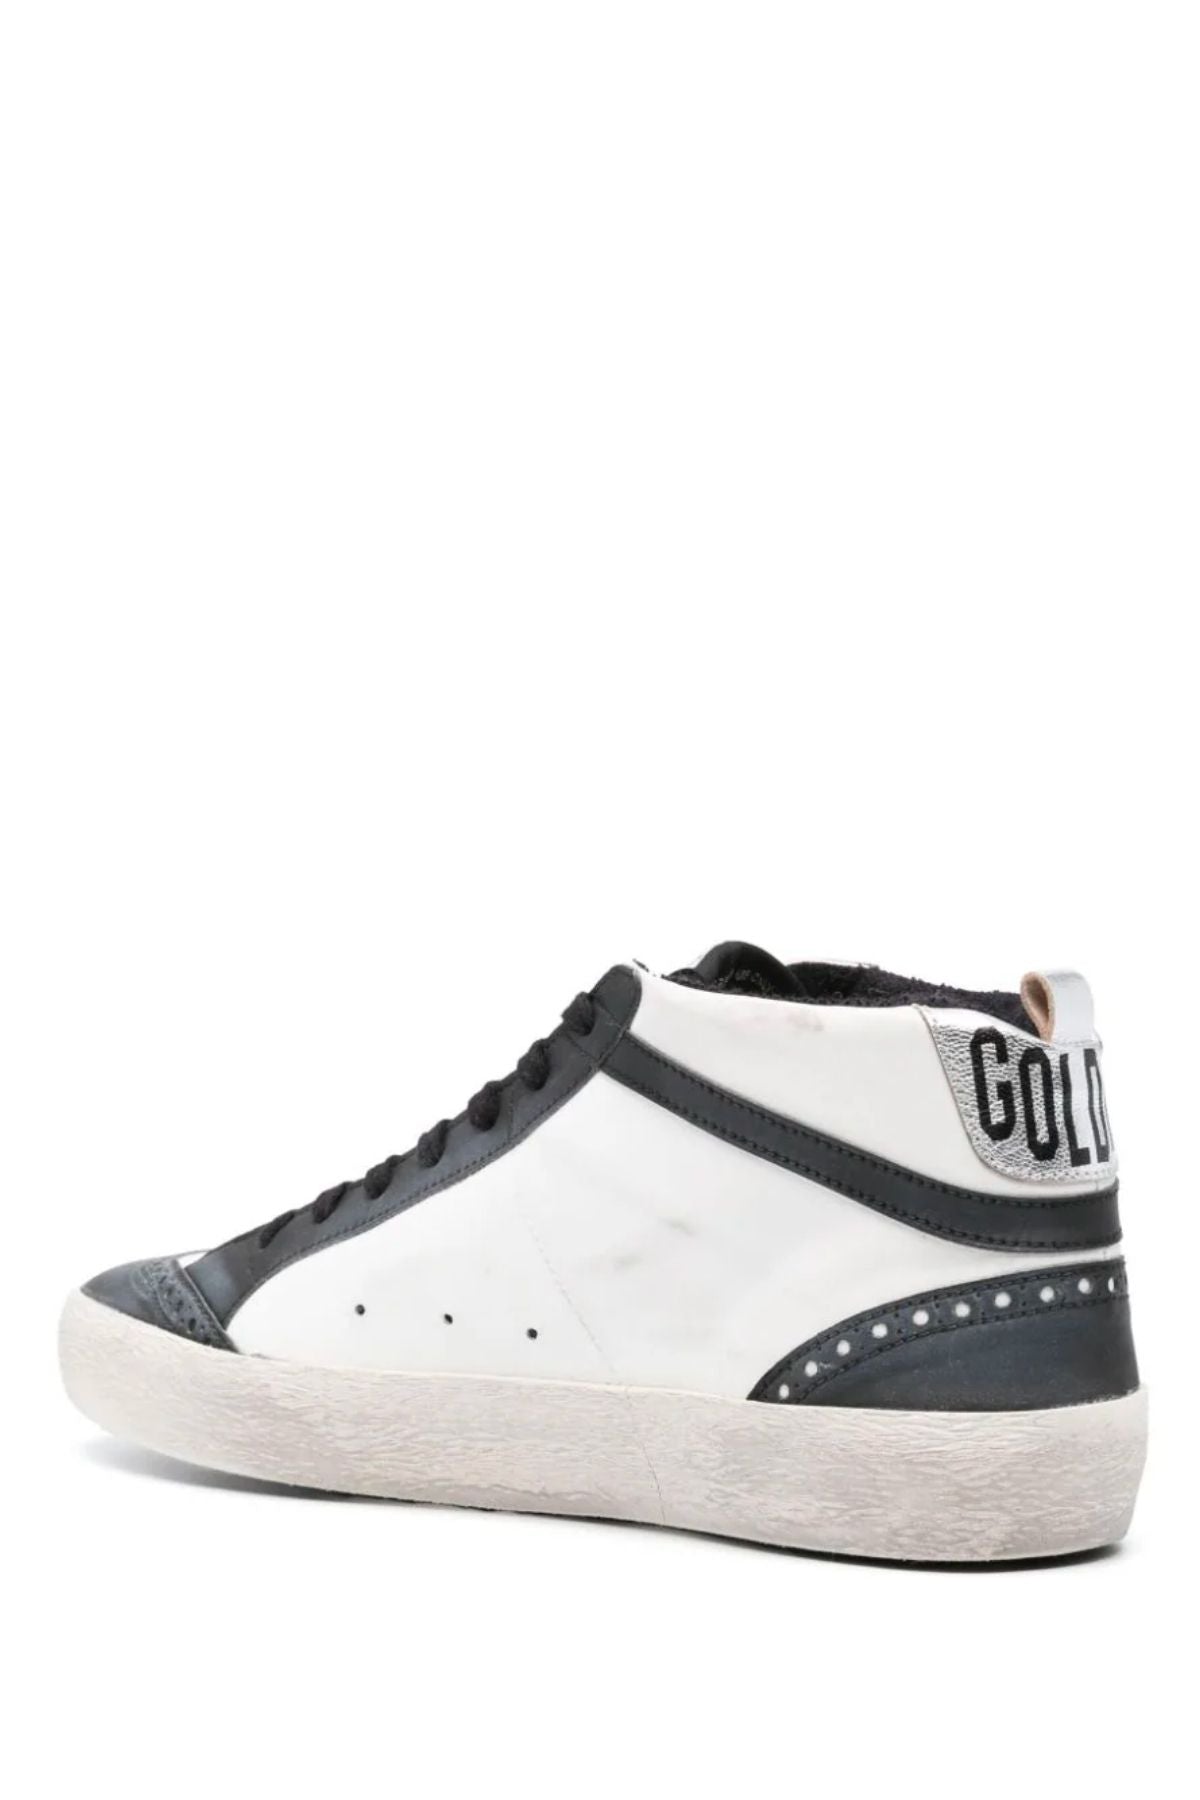 Golden Goose Mid Star Bio Based Sneaker - White/ Black/ Silver